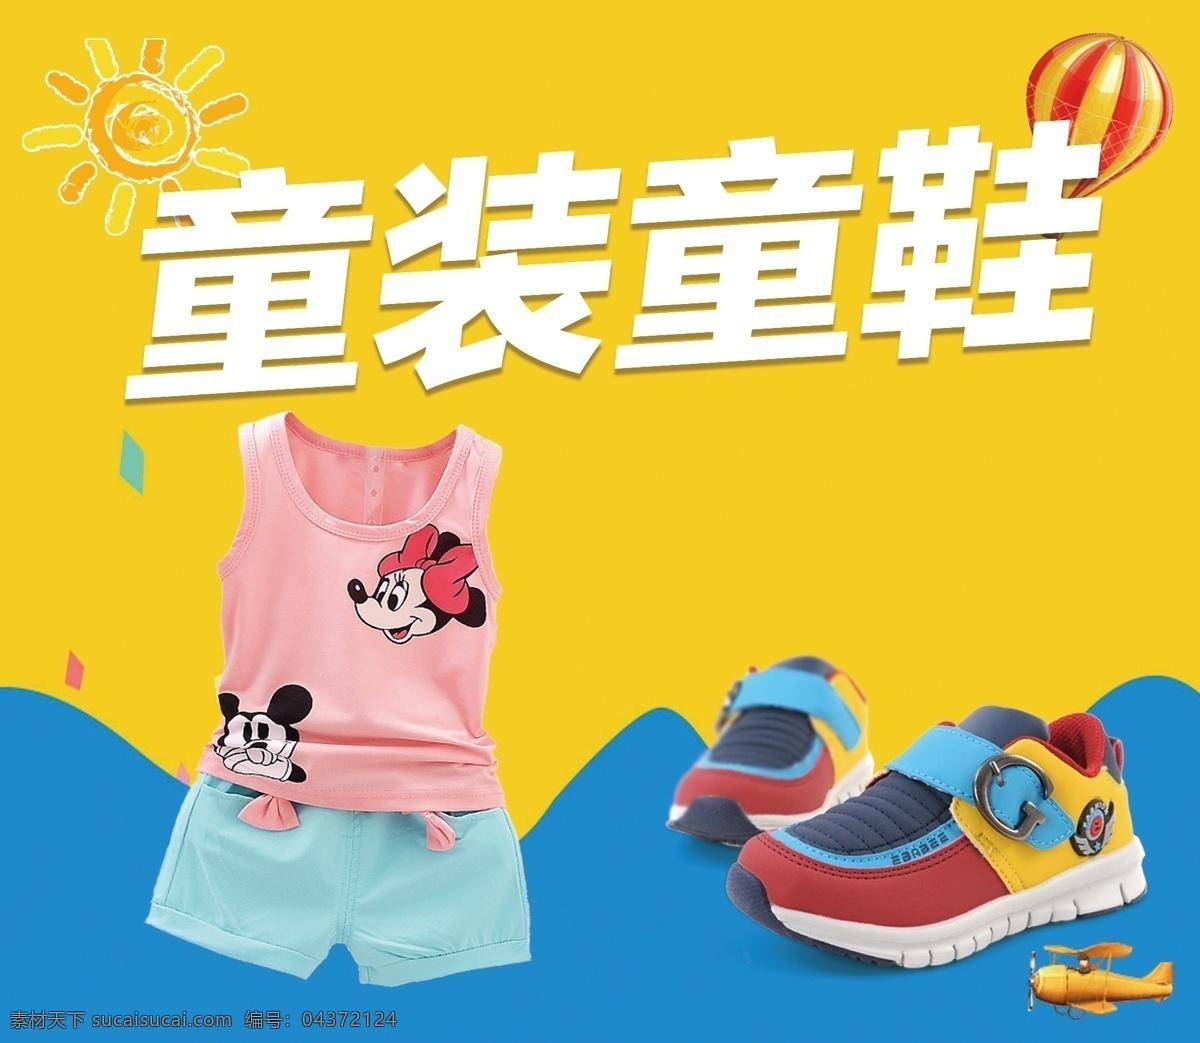 童装童鞋 童装 童鞋 喷绘 鞋子 衣服 国外广告设计